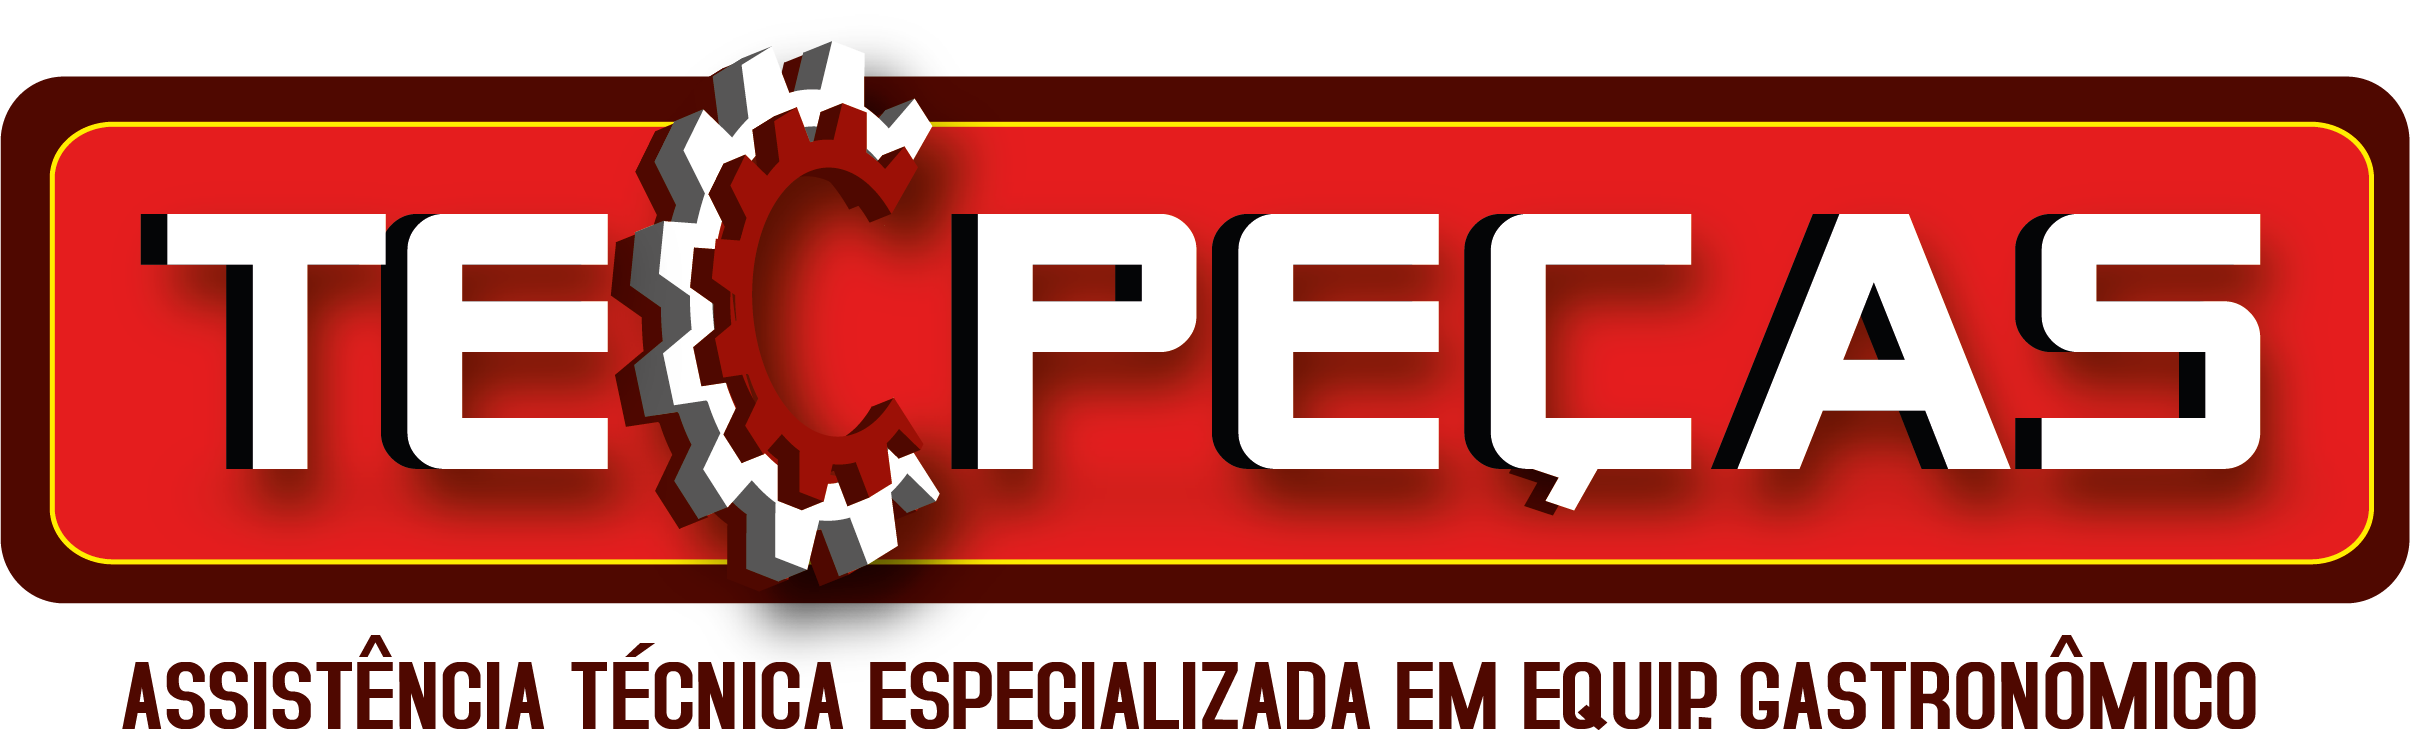 TecPeças_V1